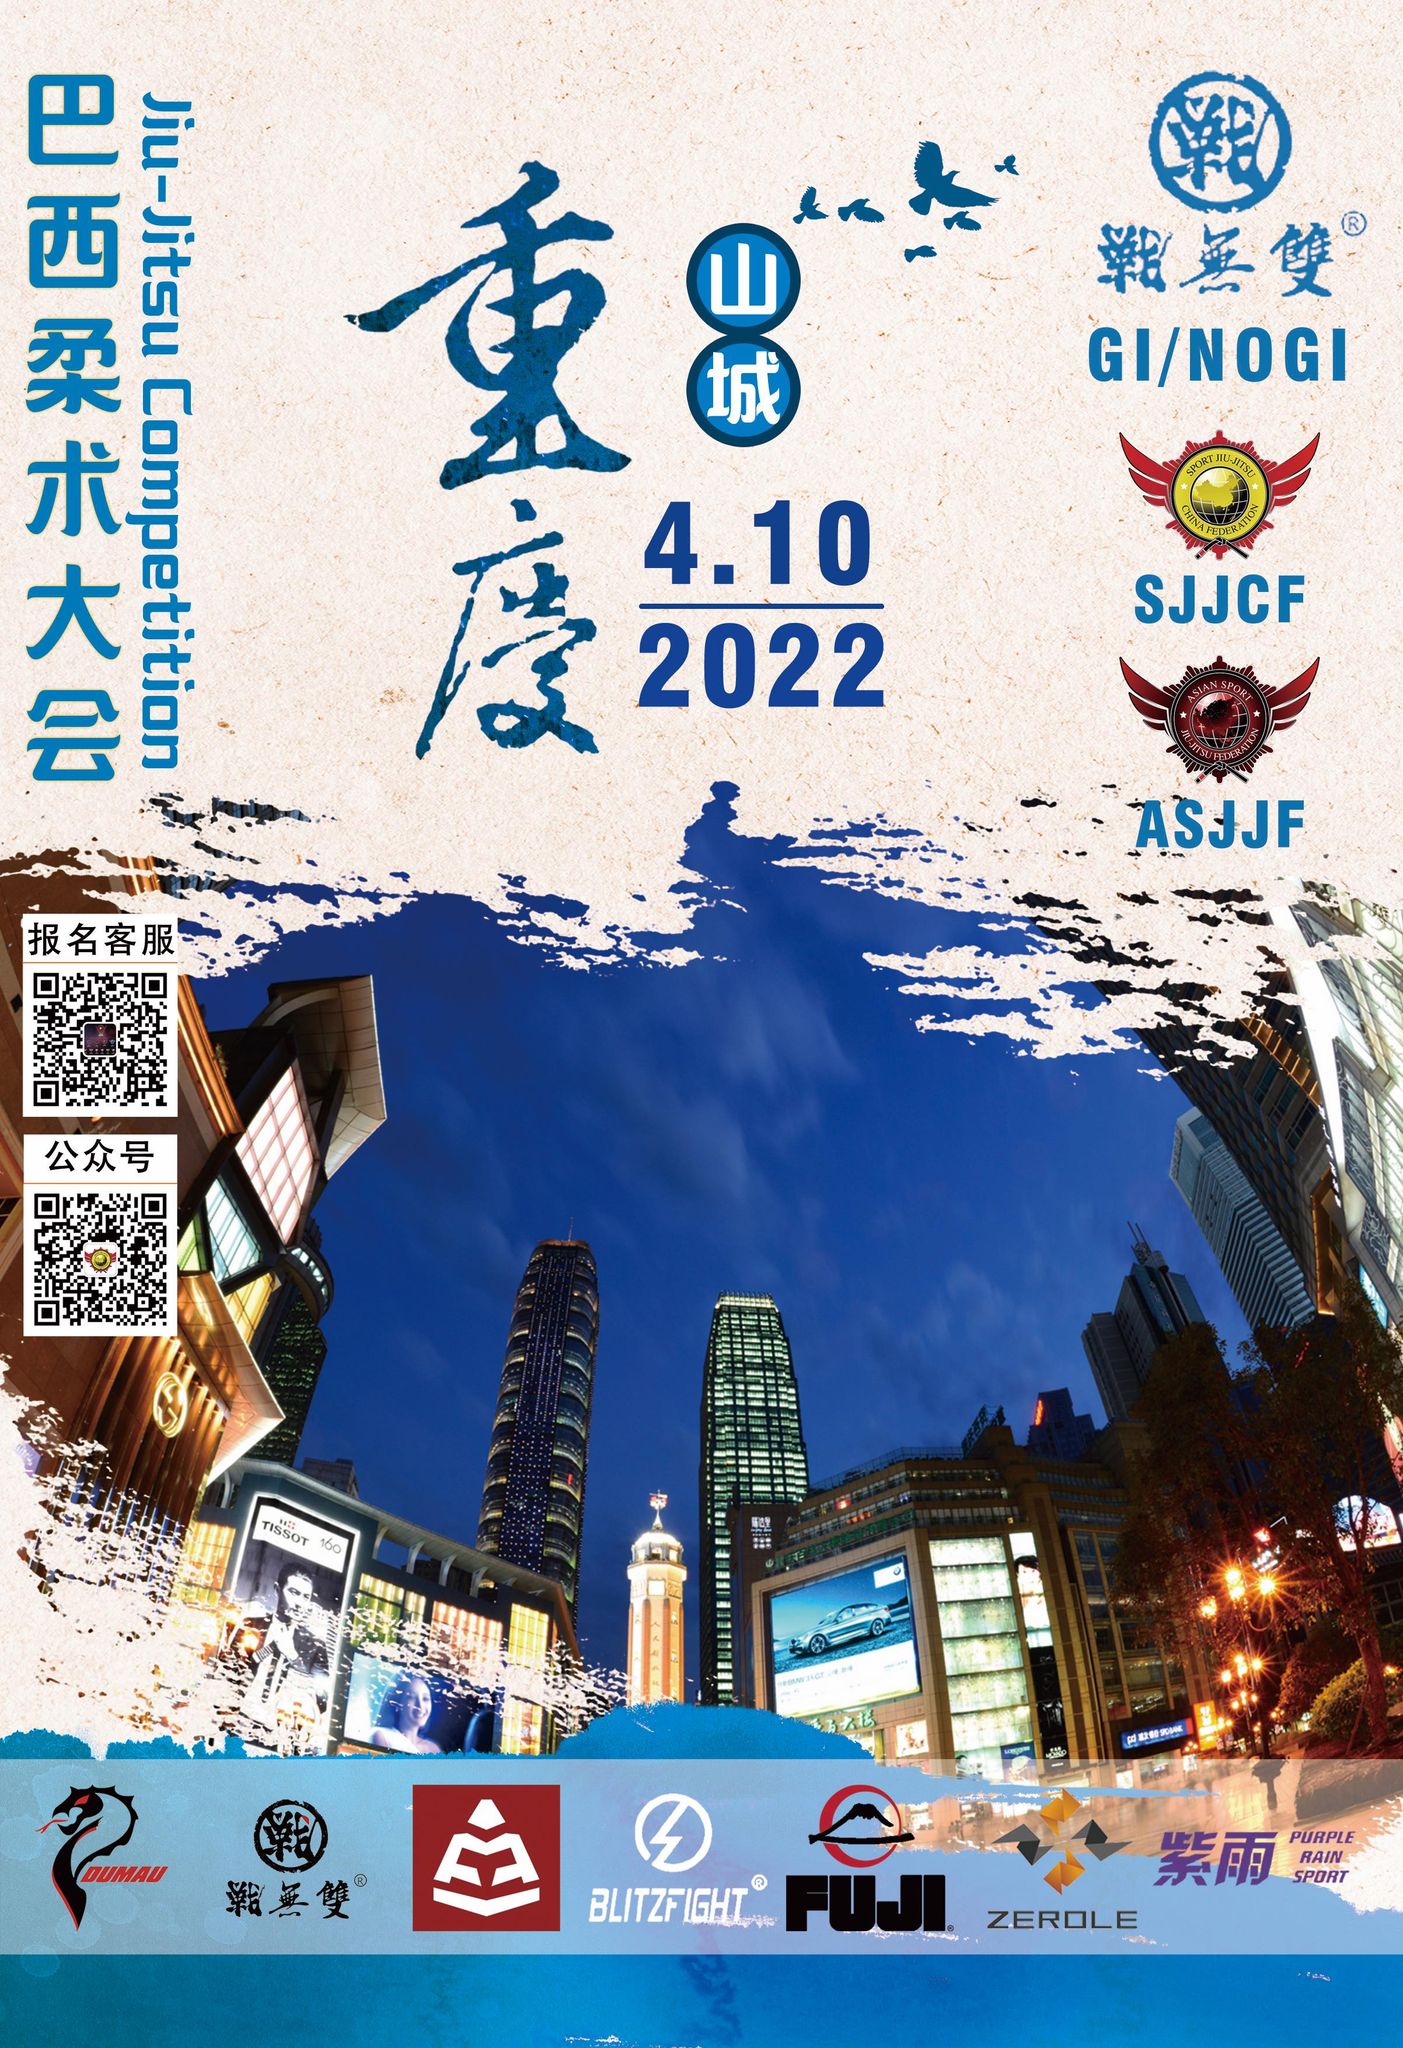 Sjjcf Chongqing No-gi Championship 2022